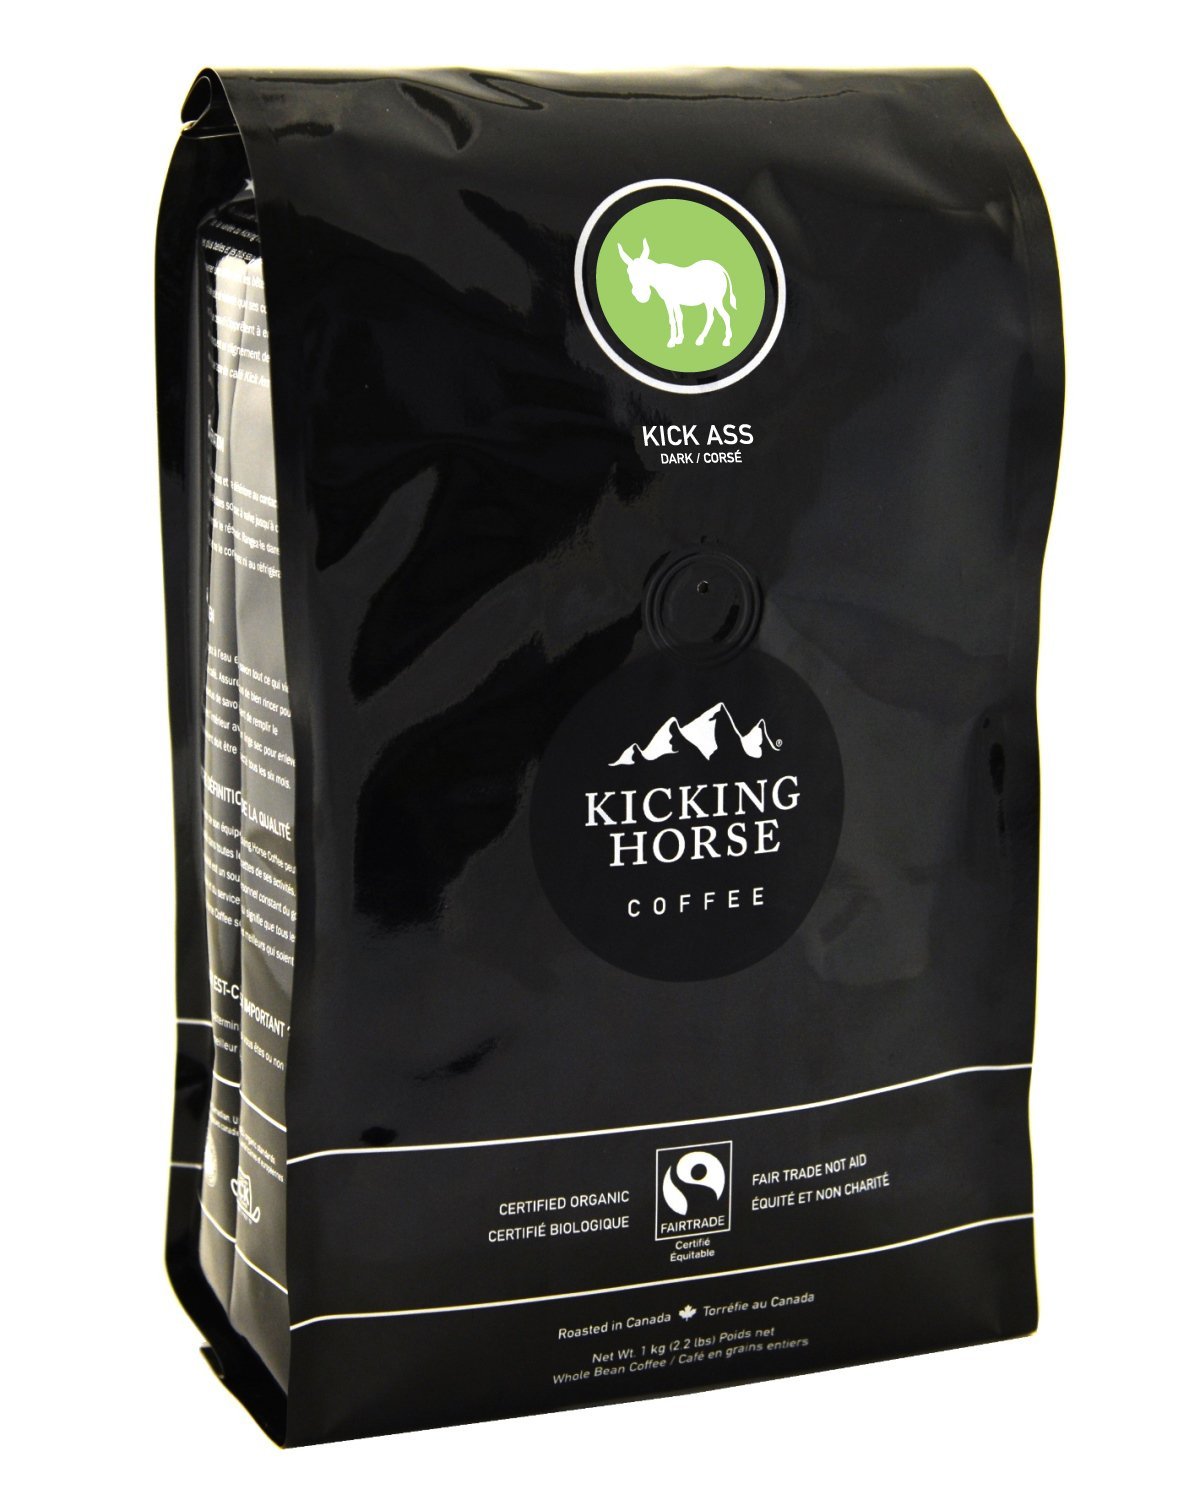 Kicking Horse Coffee bag. Retailer photo. 